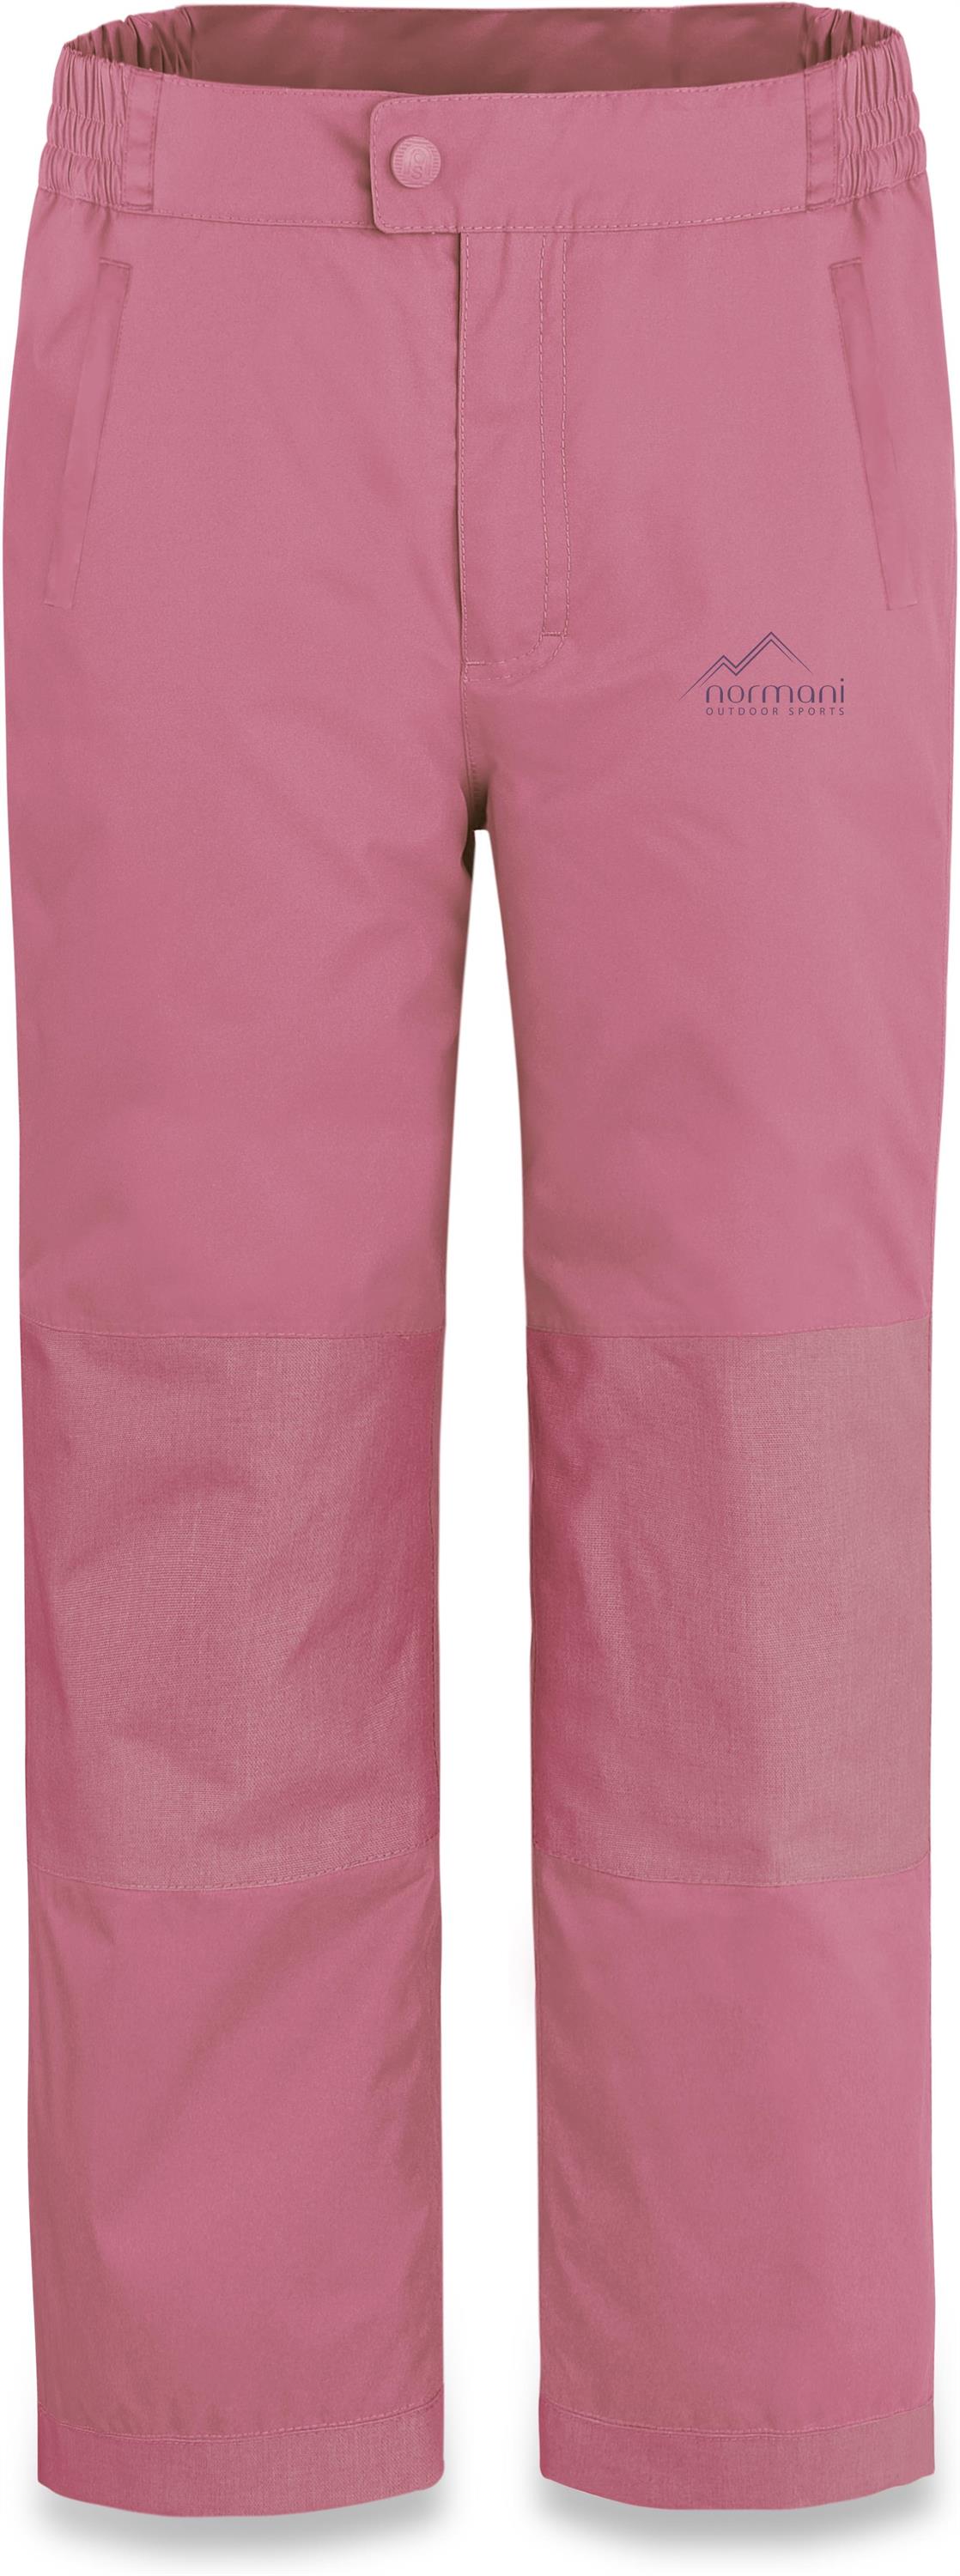 Лыжные штаны Normani Outdoor Sports Kinder Winterhose Deltana, розовый цена и фото